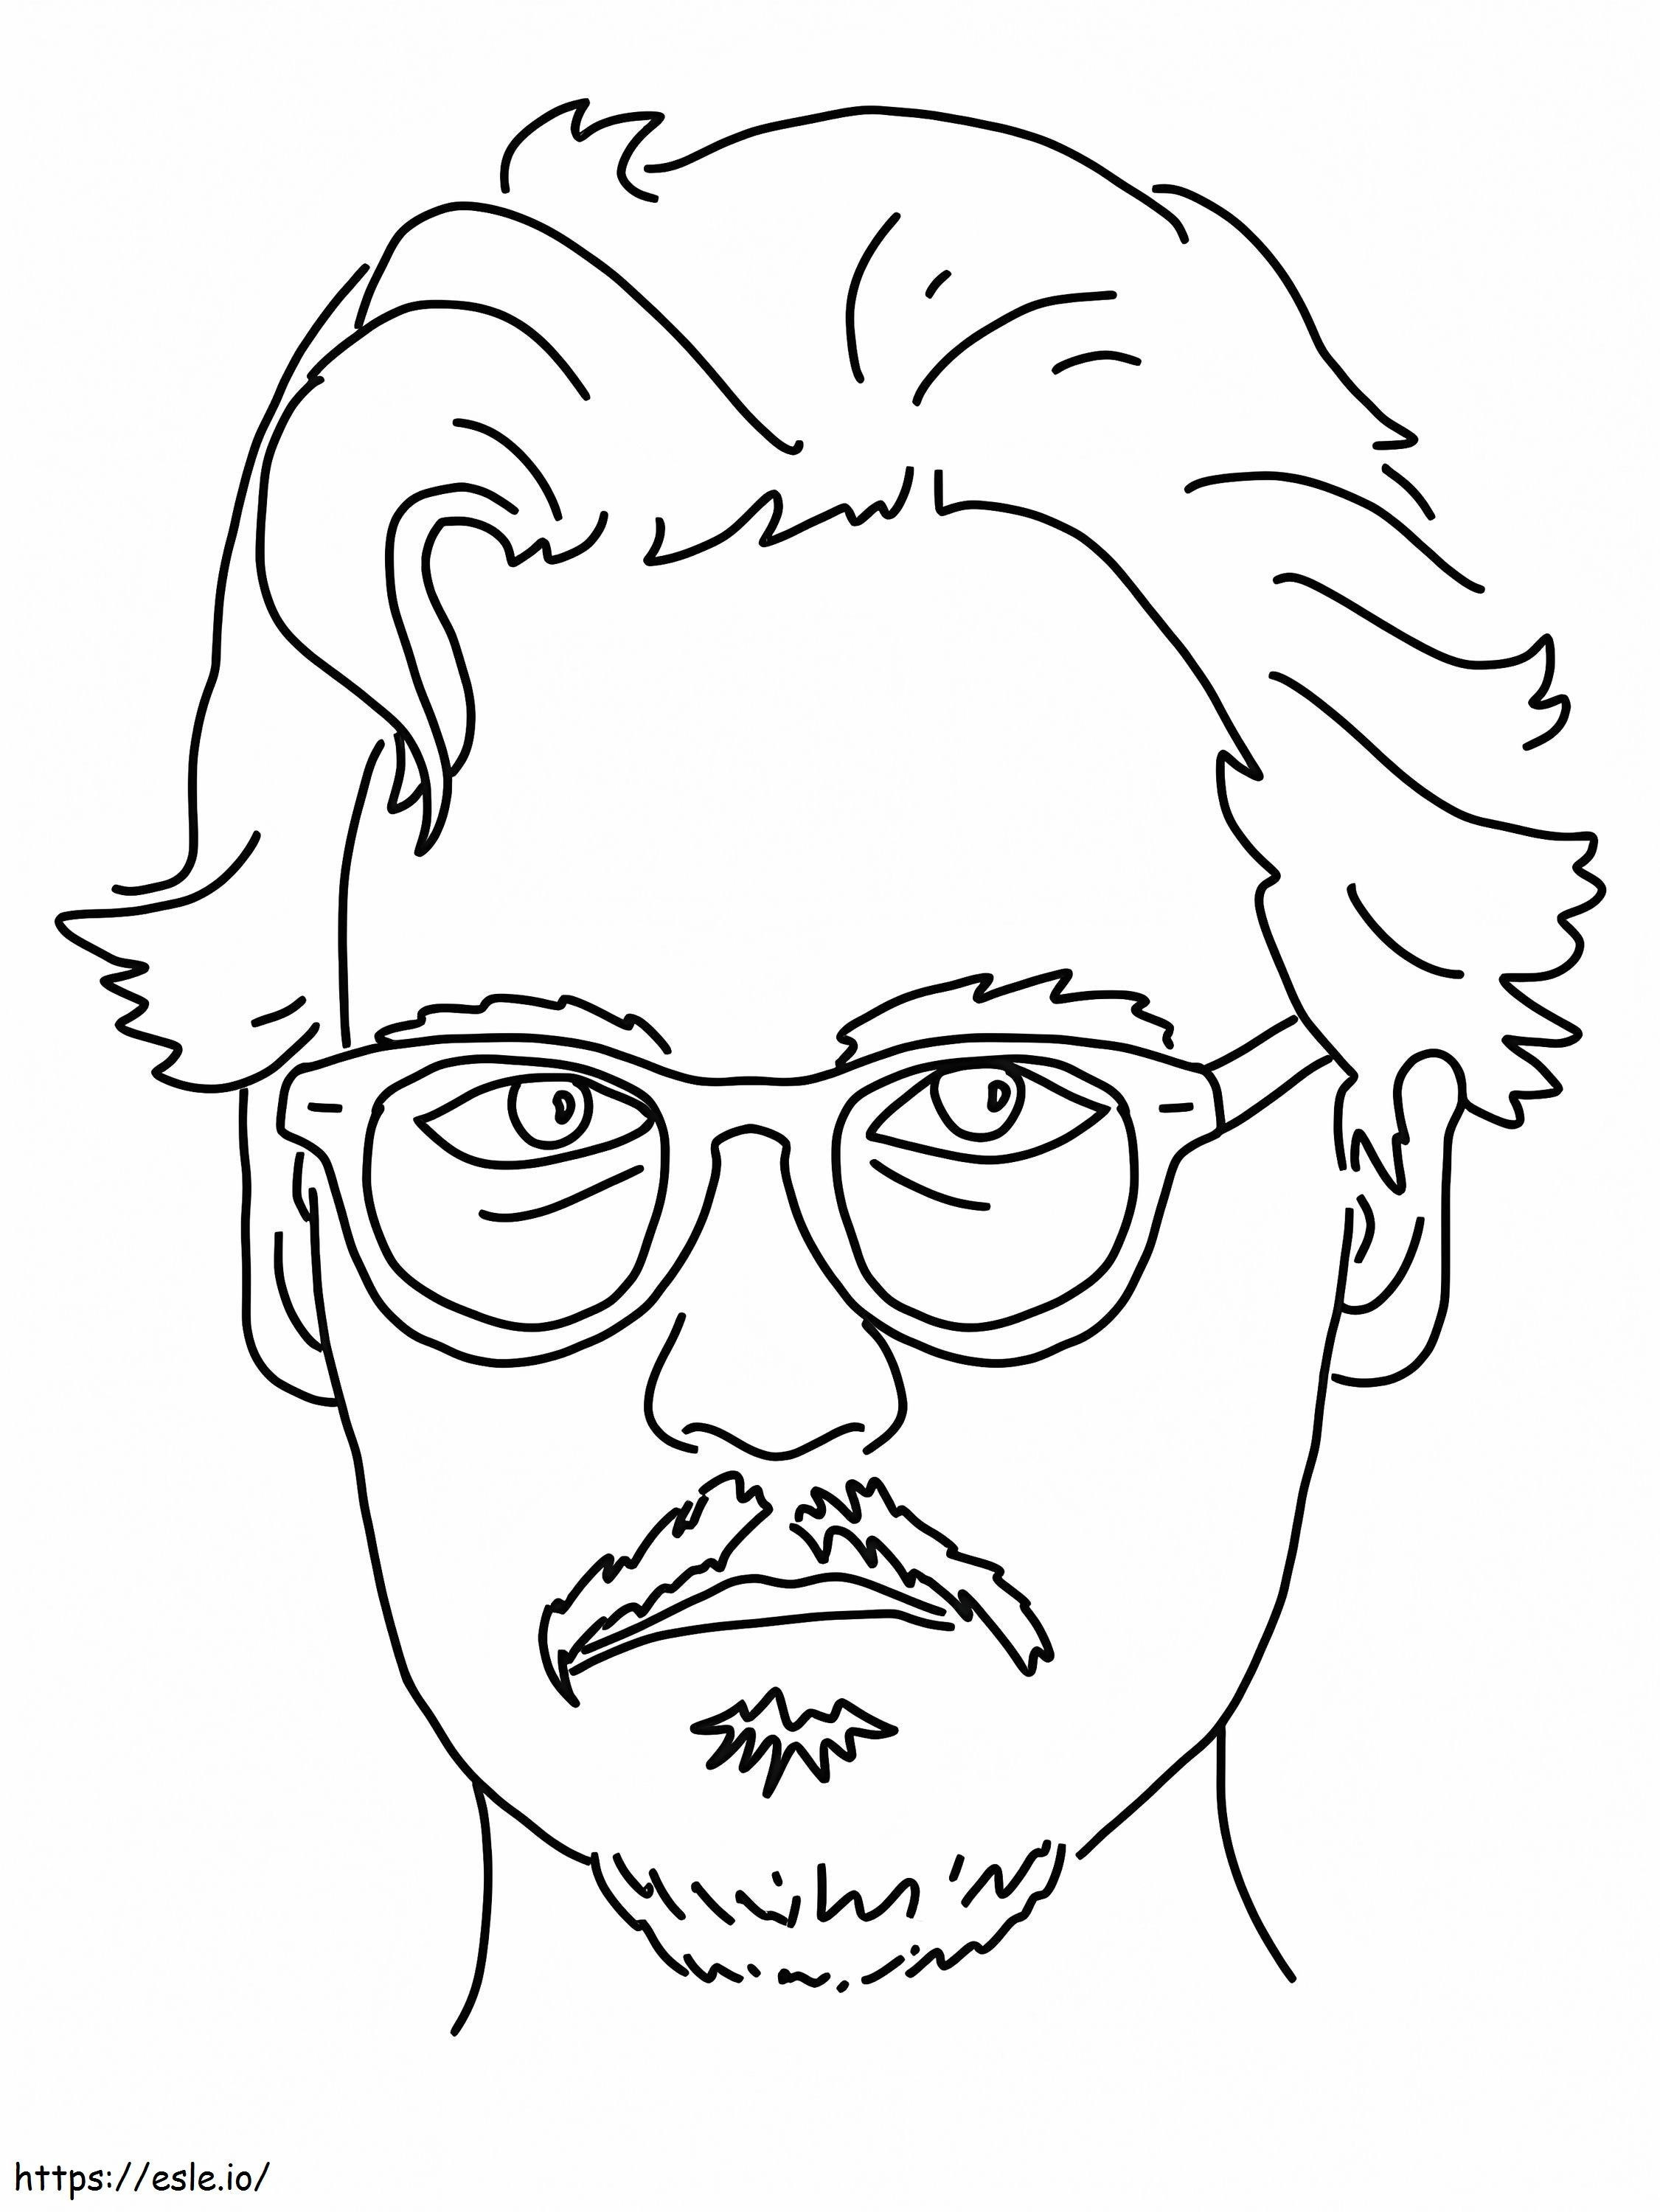 Fața lui Johnny Depps de colorat